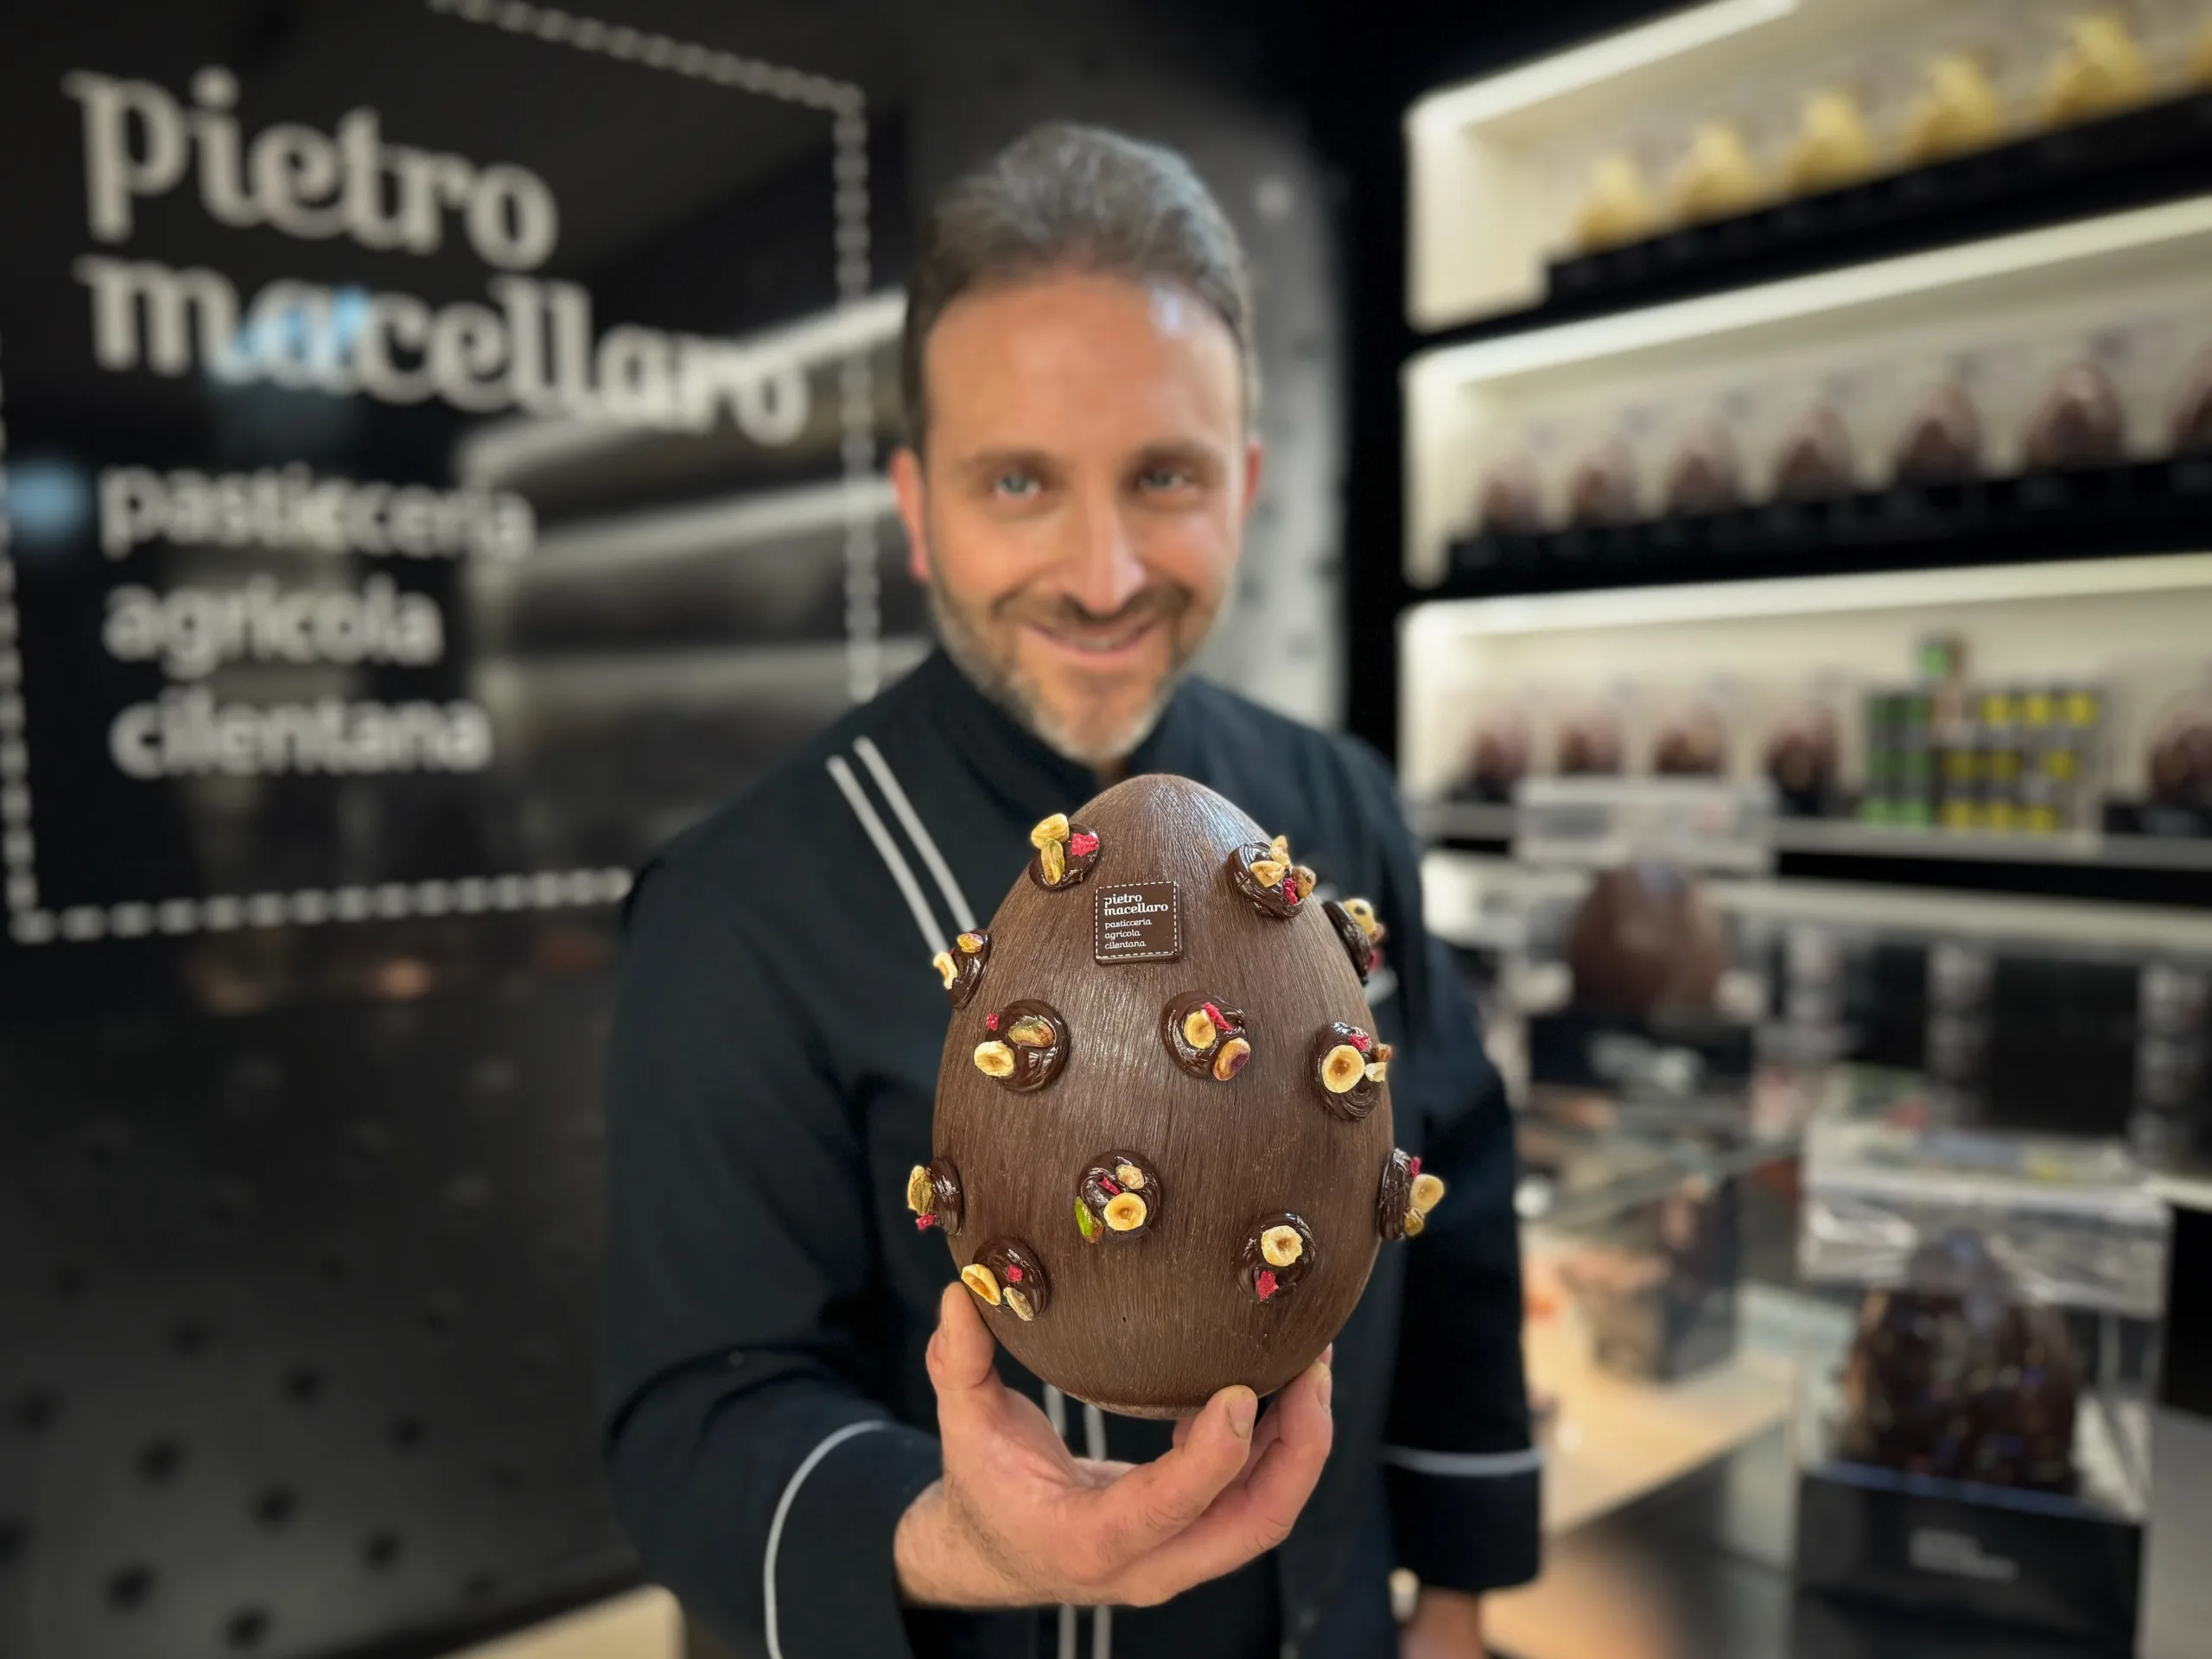 Pietro Macellaro, Maestro Pasticcere e Cioccolatiere